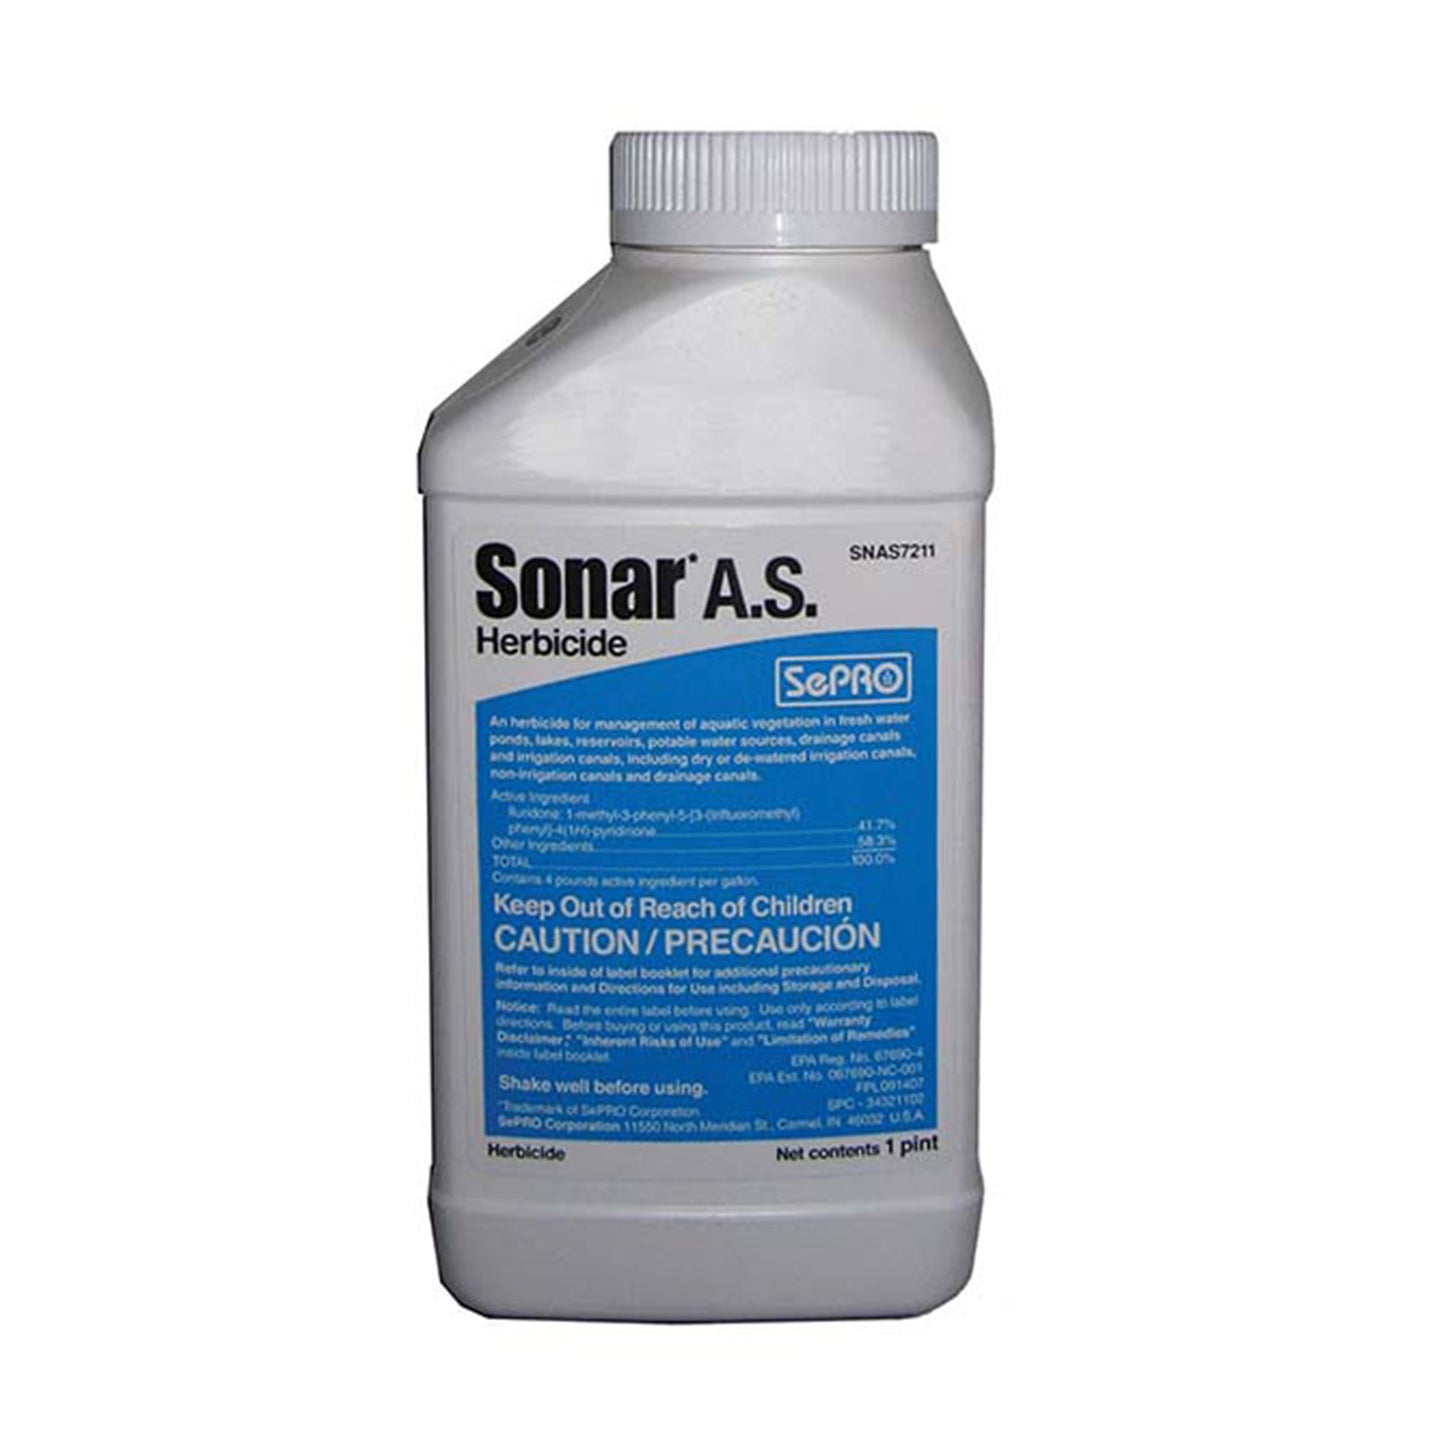 Sonar A.S. Aquatic Herbicide - 8 oz